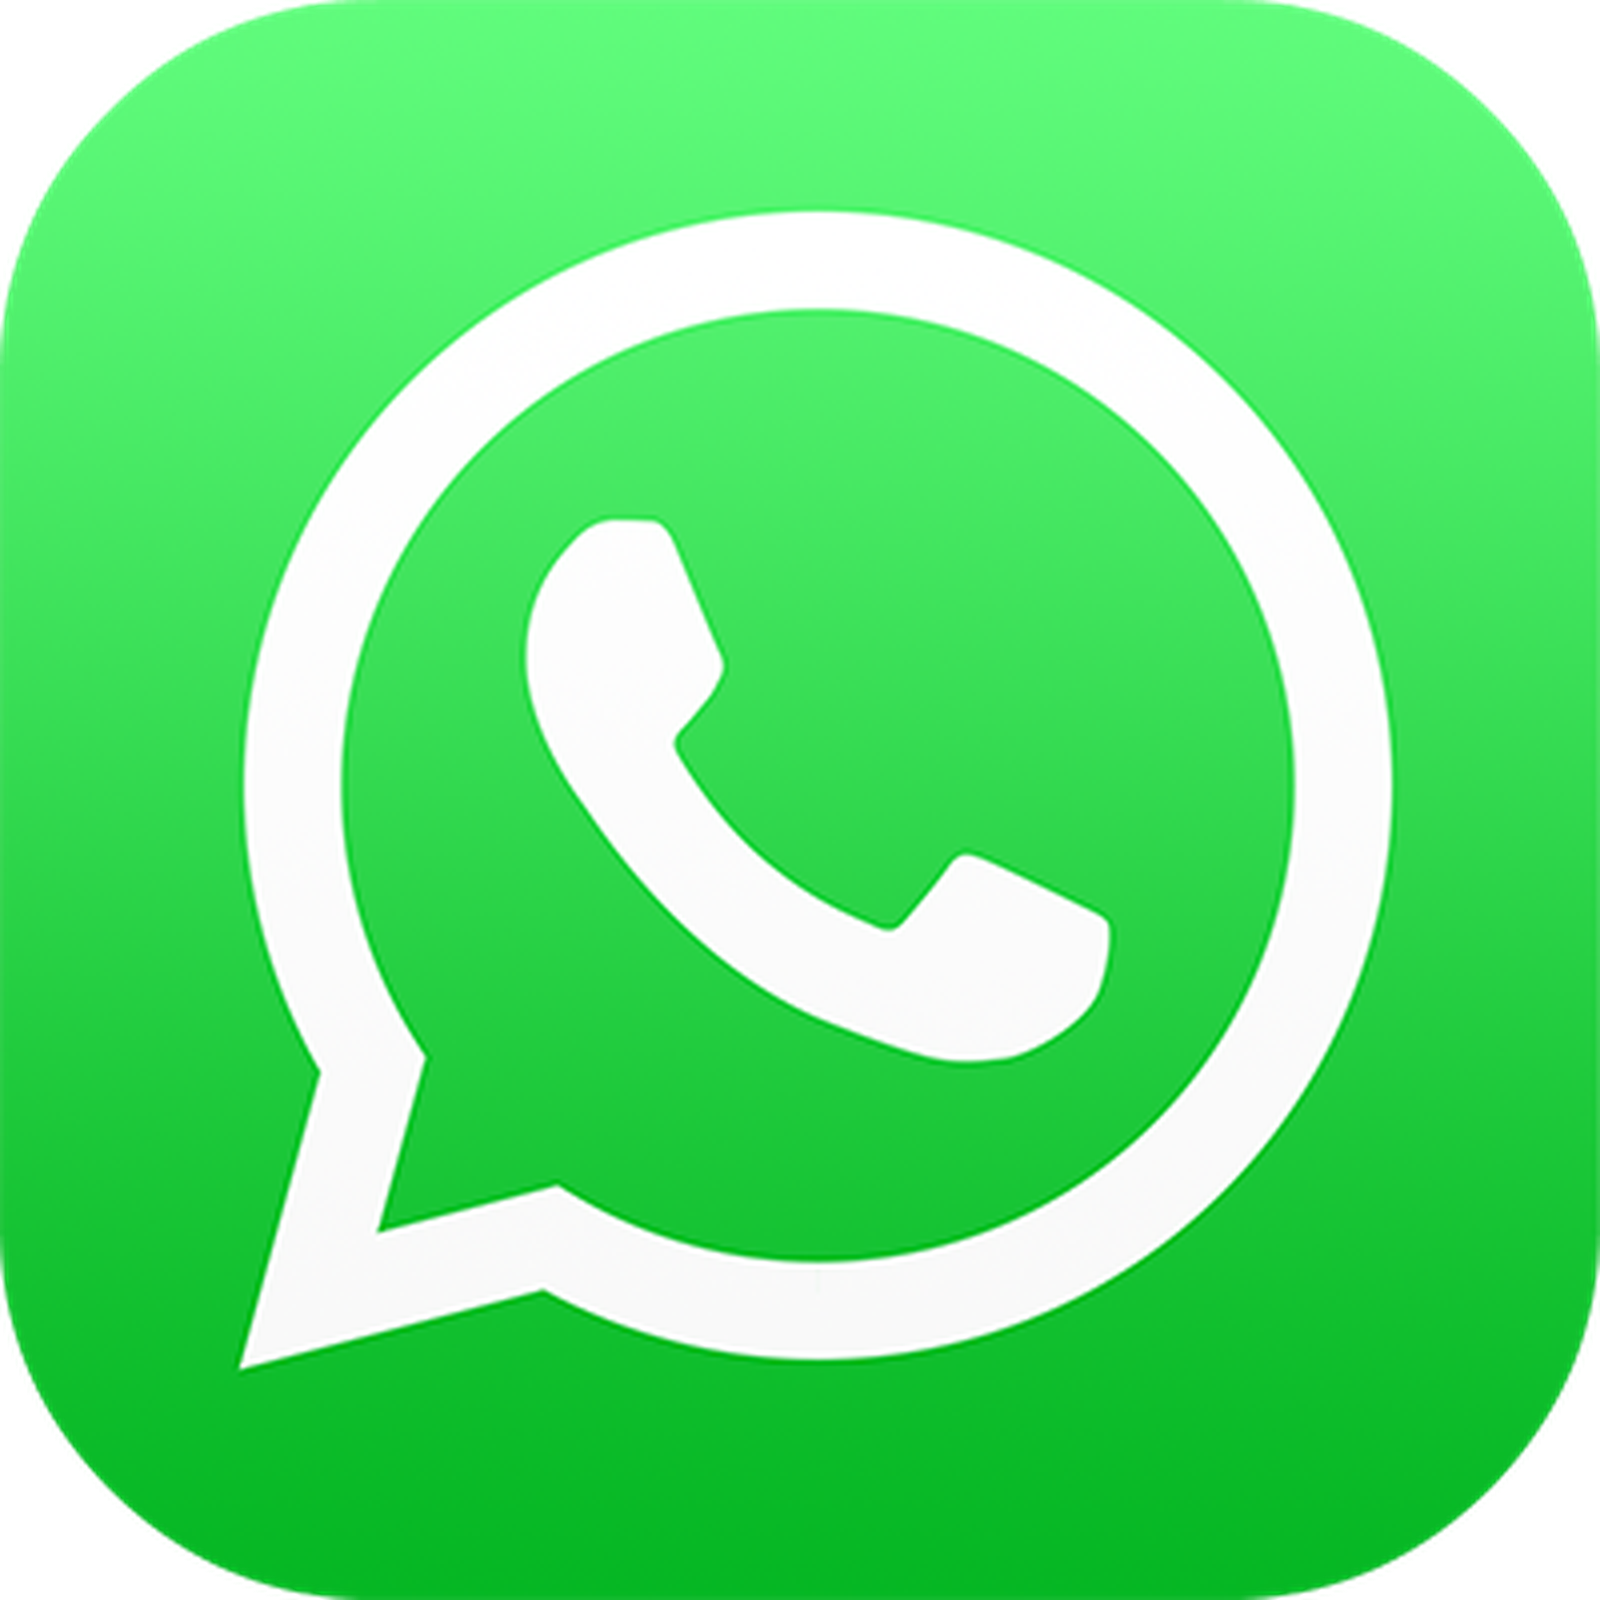 WhatsApp rivela cosa succede agli utenti che non accettano le imminenti modifiche alla sua politica sulla privacy